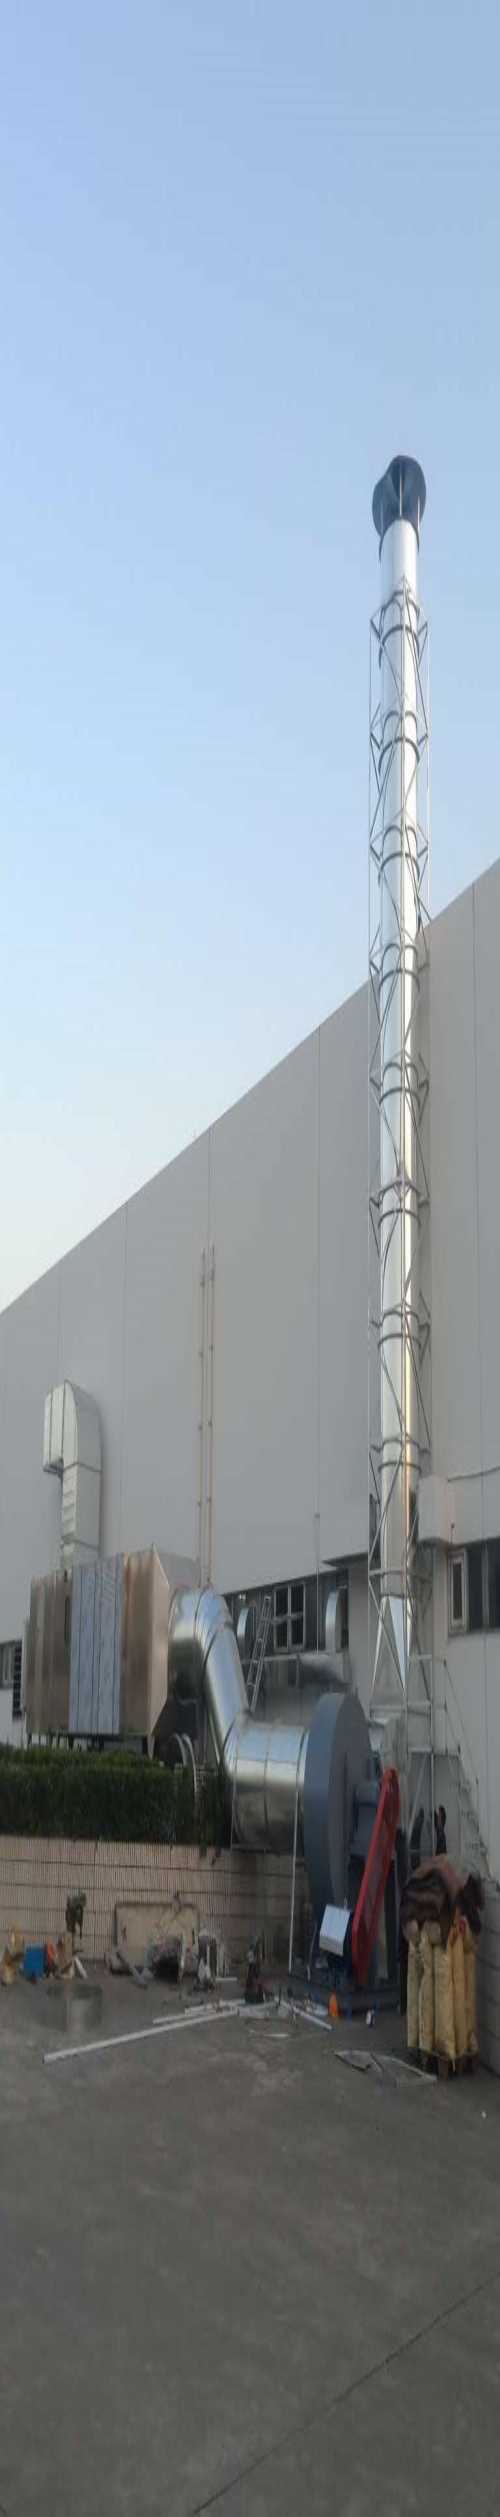 上海白铁皮通风管道安装|上海山优暖制作|白铁通风管道设计